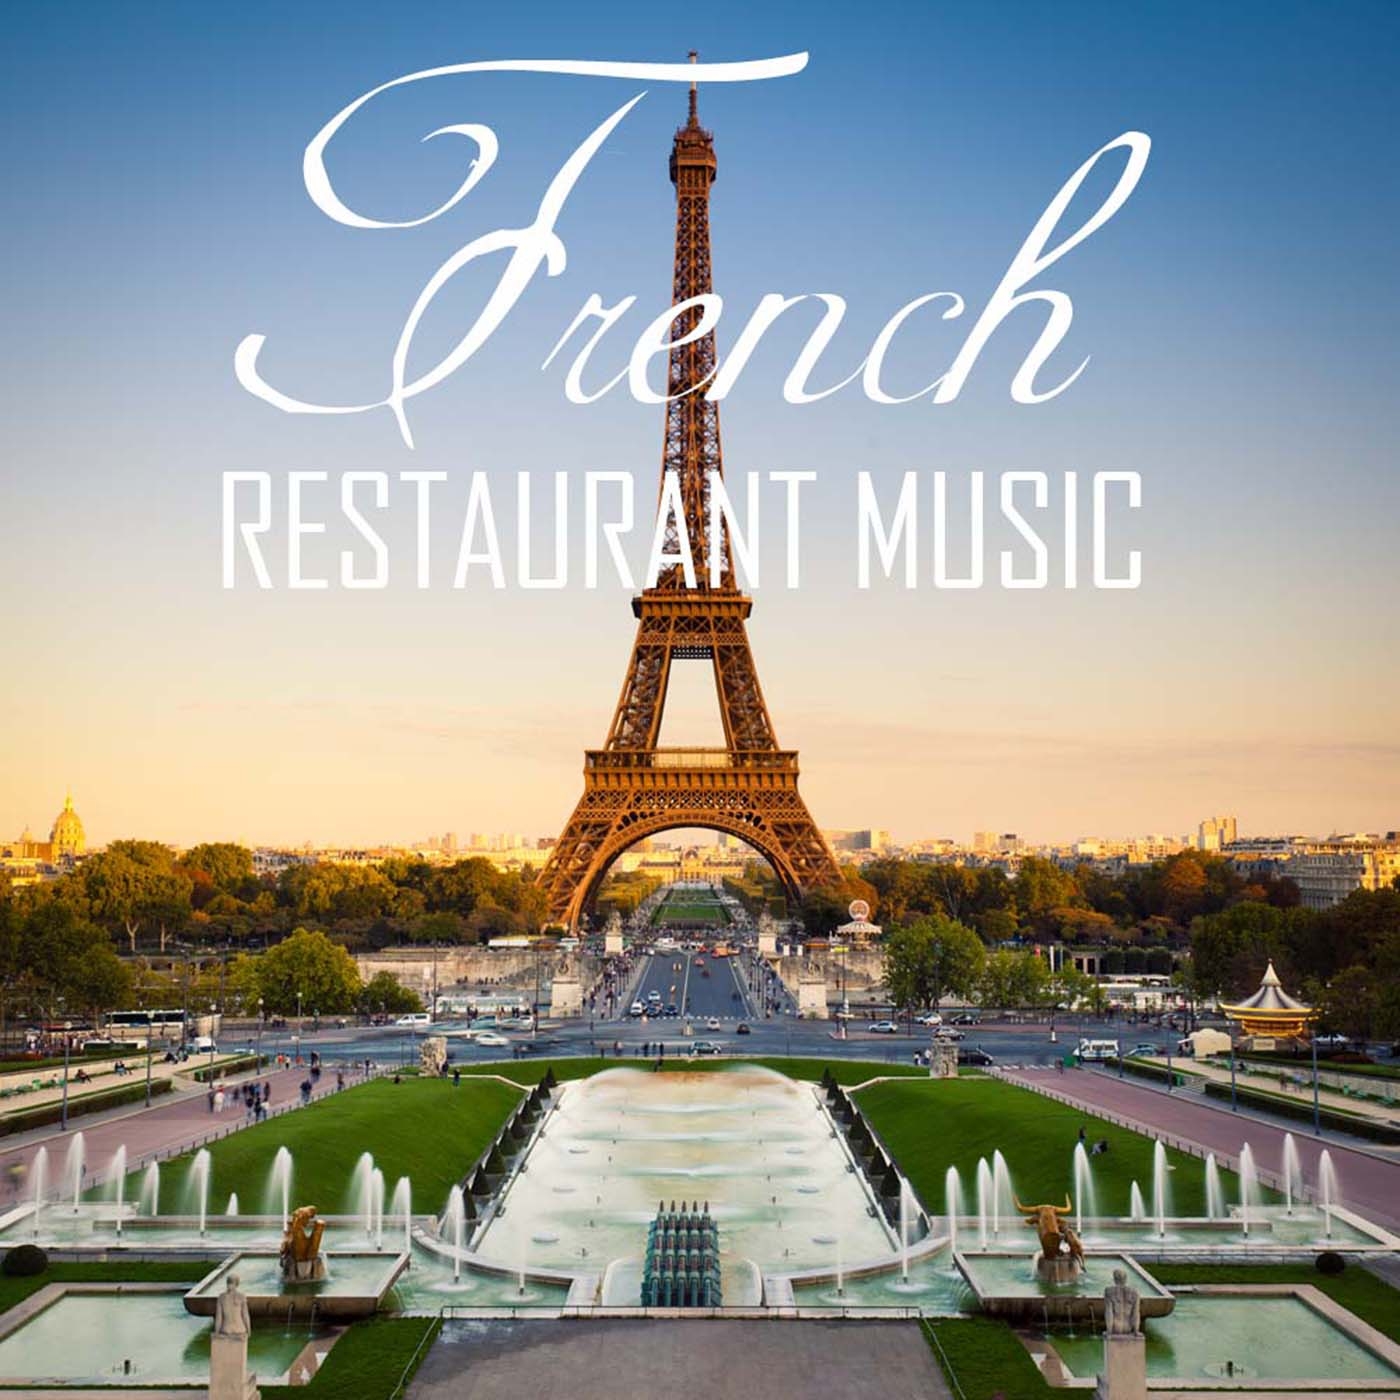 French Restaurant Music: Background Music for Romantic Dinner & Folk Wedding Music